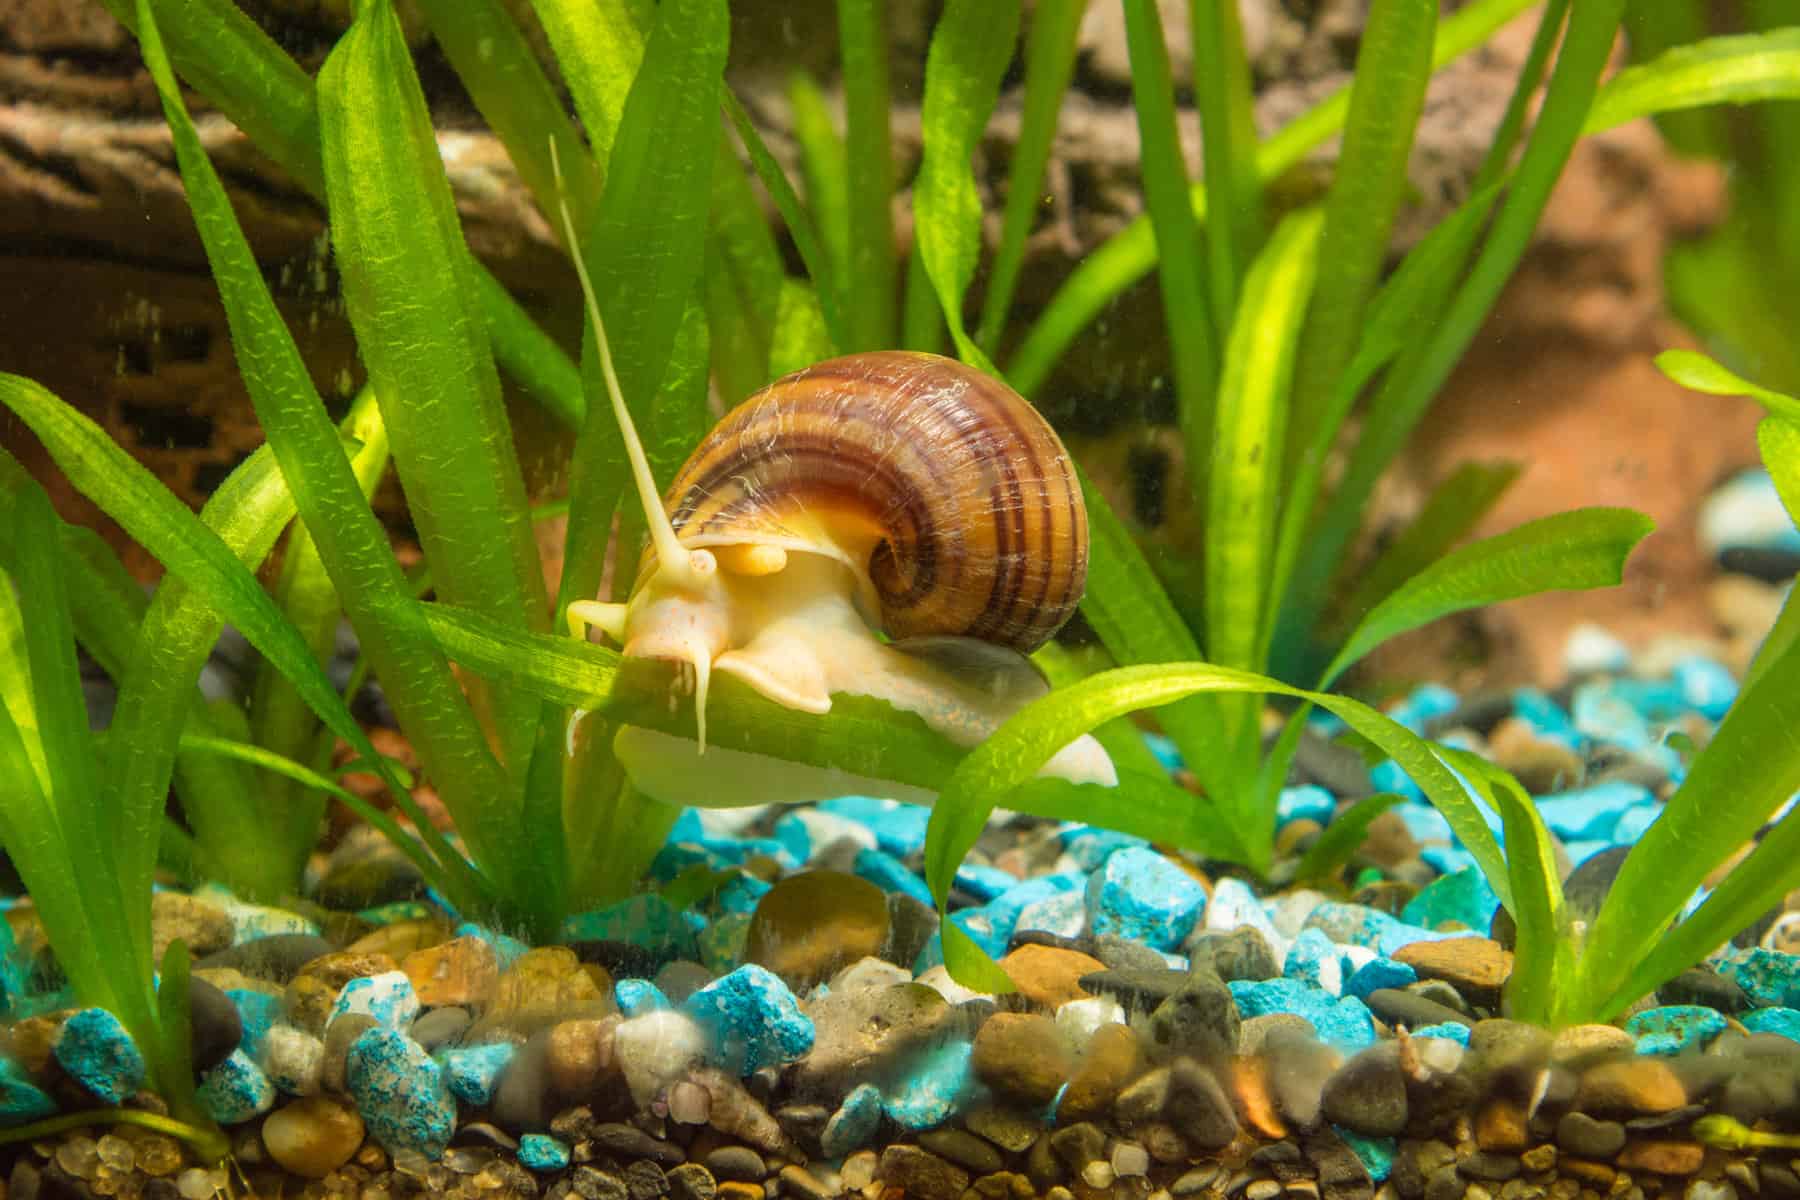 Mystery snail